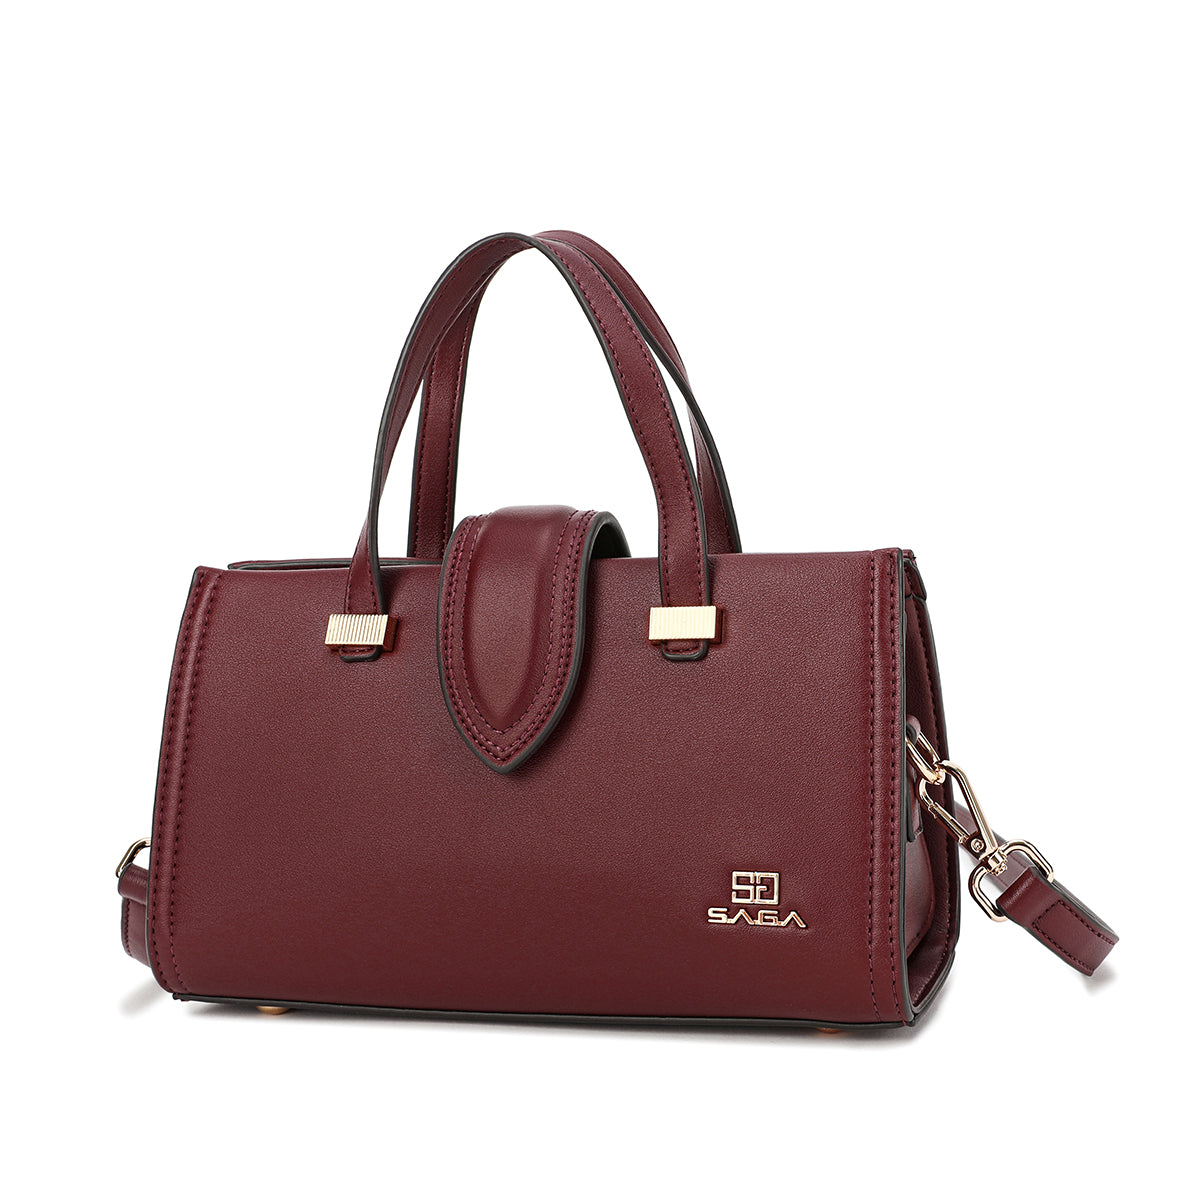 Women Handbags - Buy Women Handbags Online at Best Prices In India |  Flipkart.com